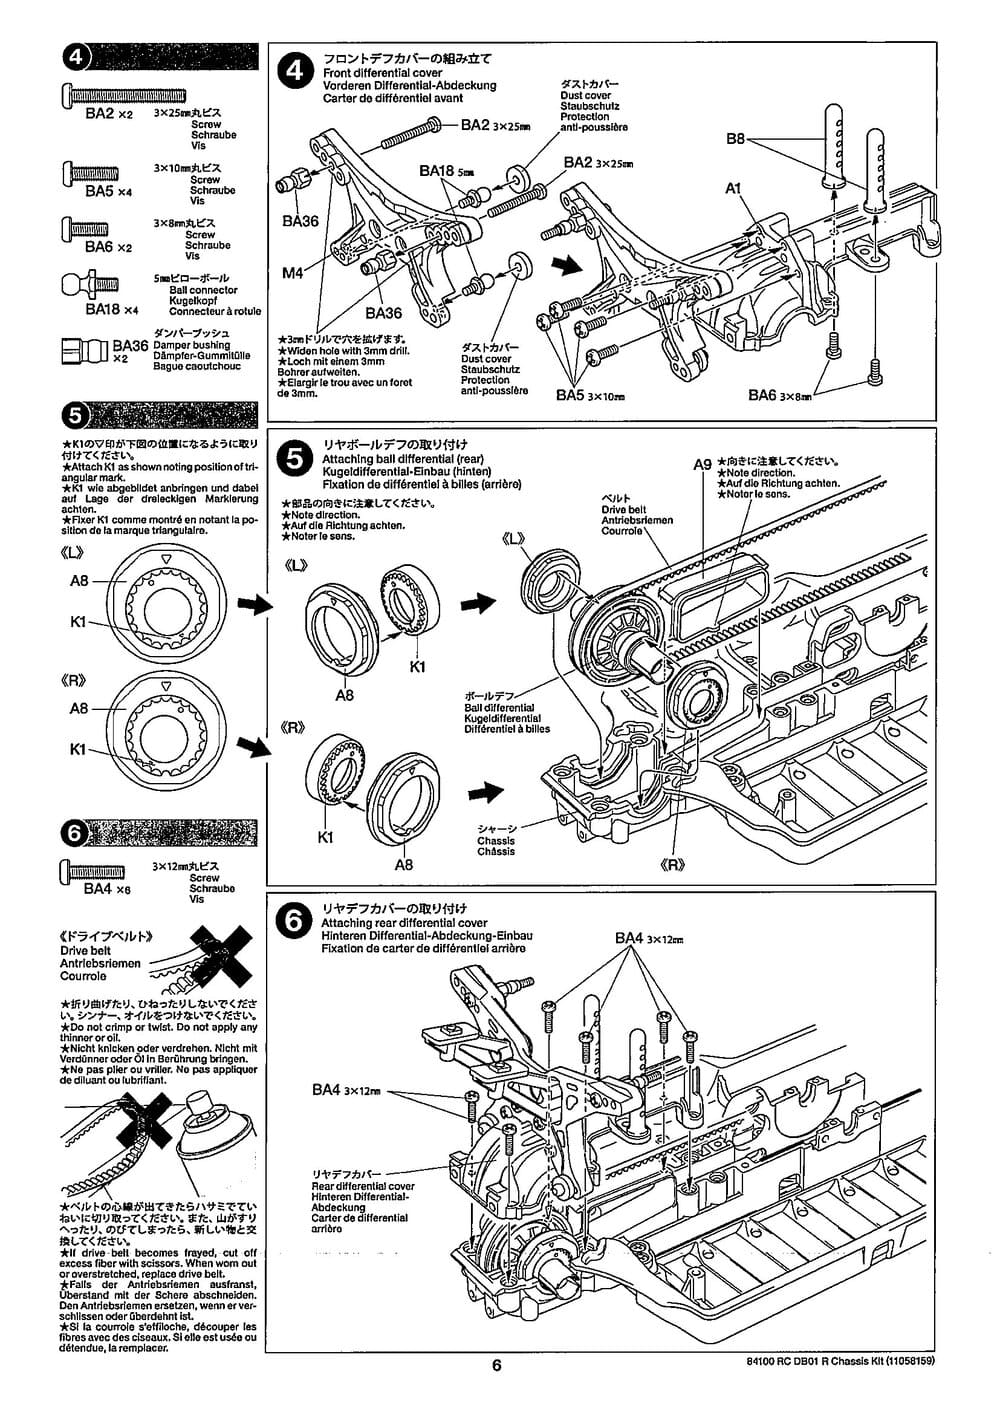 Tamiya - DB-01R Chassis - Manual - Page 6